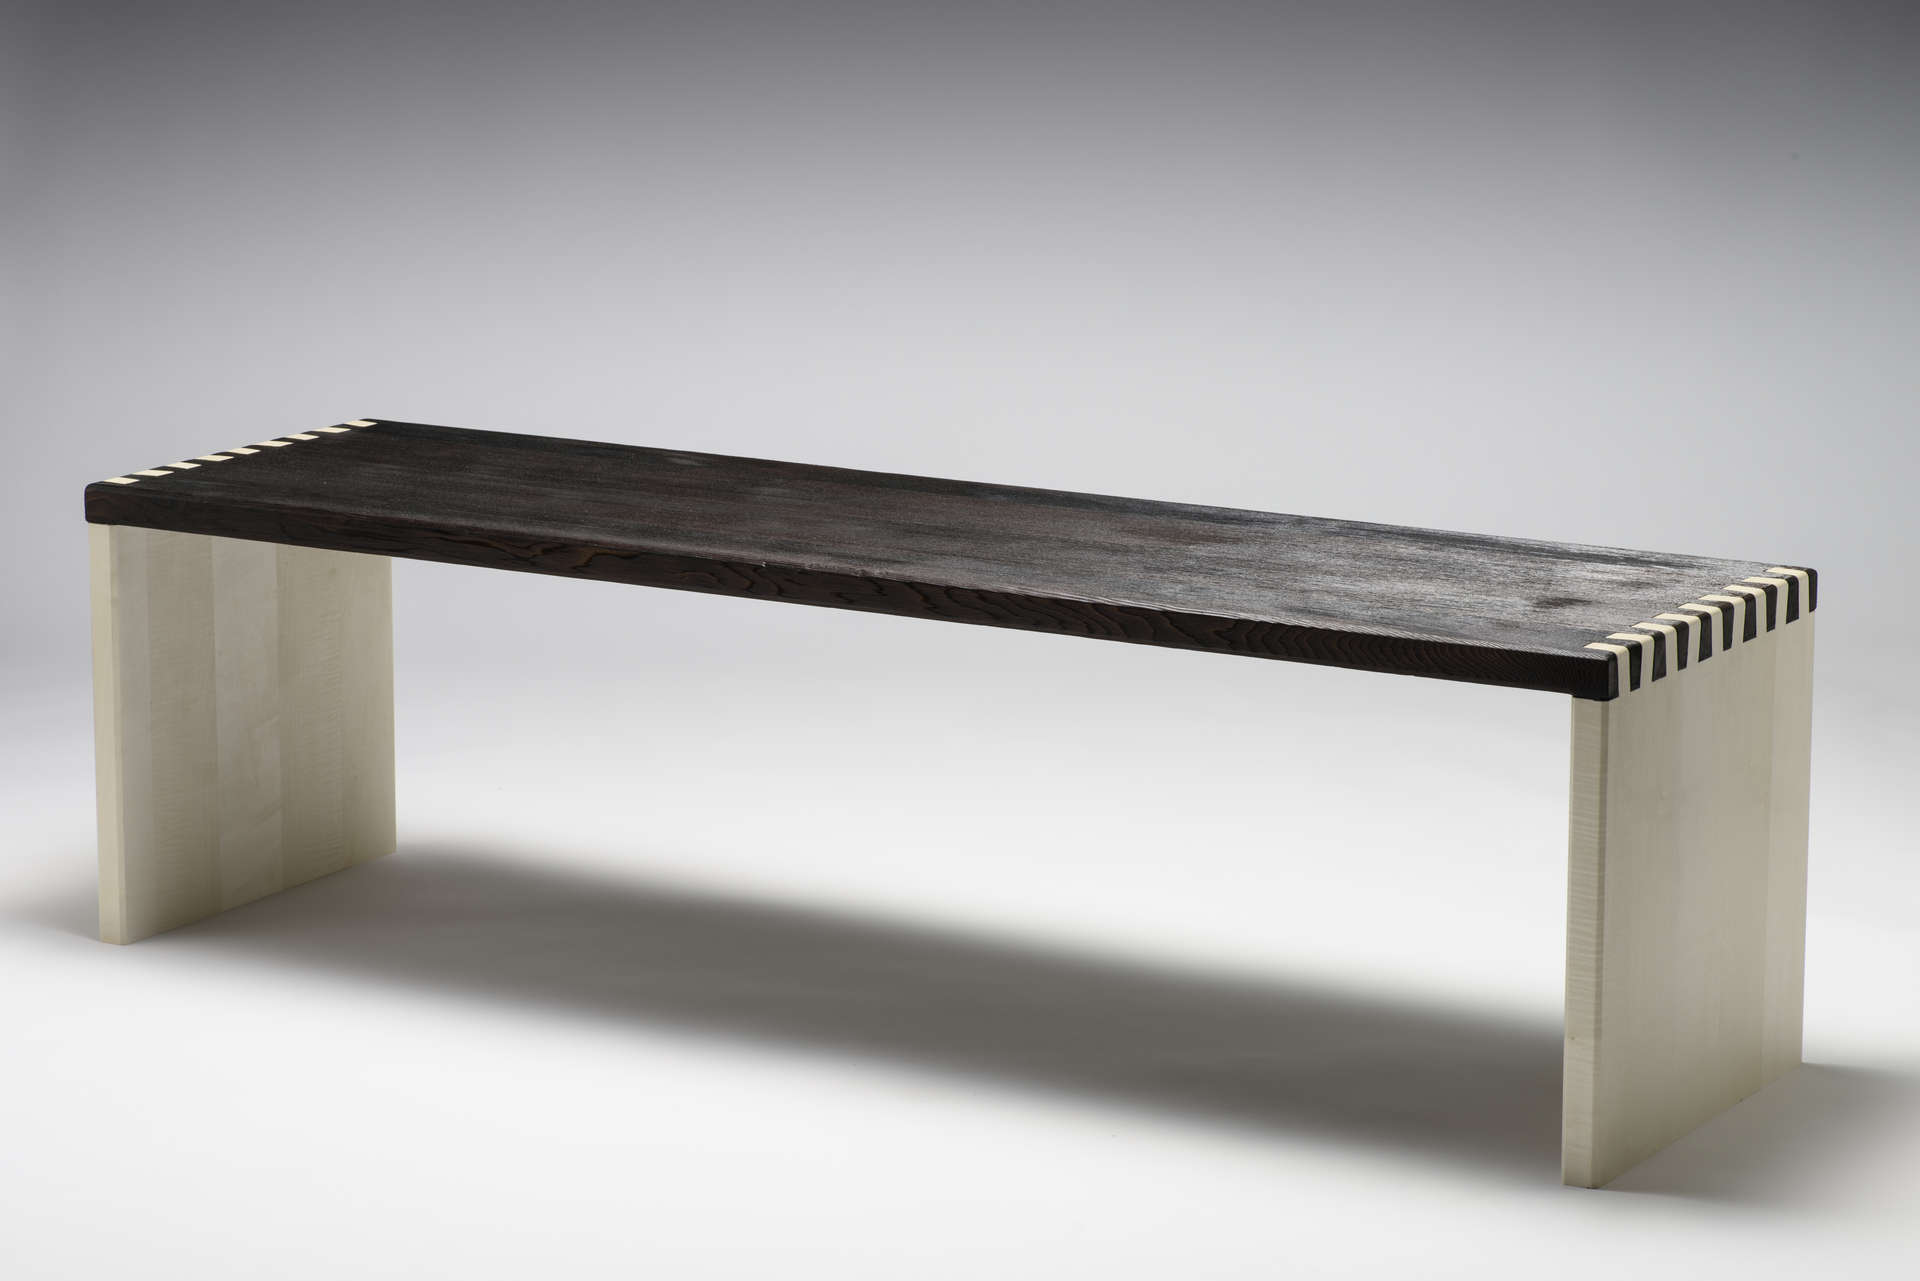 Sitzbank aus Massivholz im japanischen Design. Schwarze Sitzfläche aus geköhltem Zedernholz. Weiße Seitenteile.